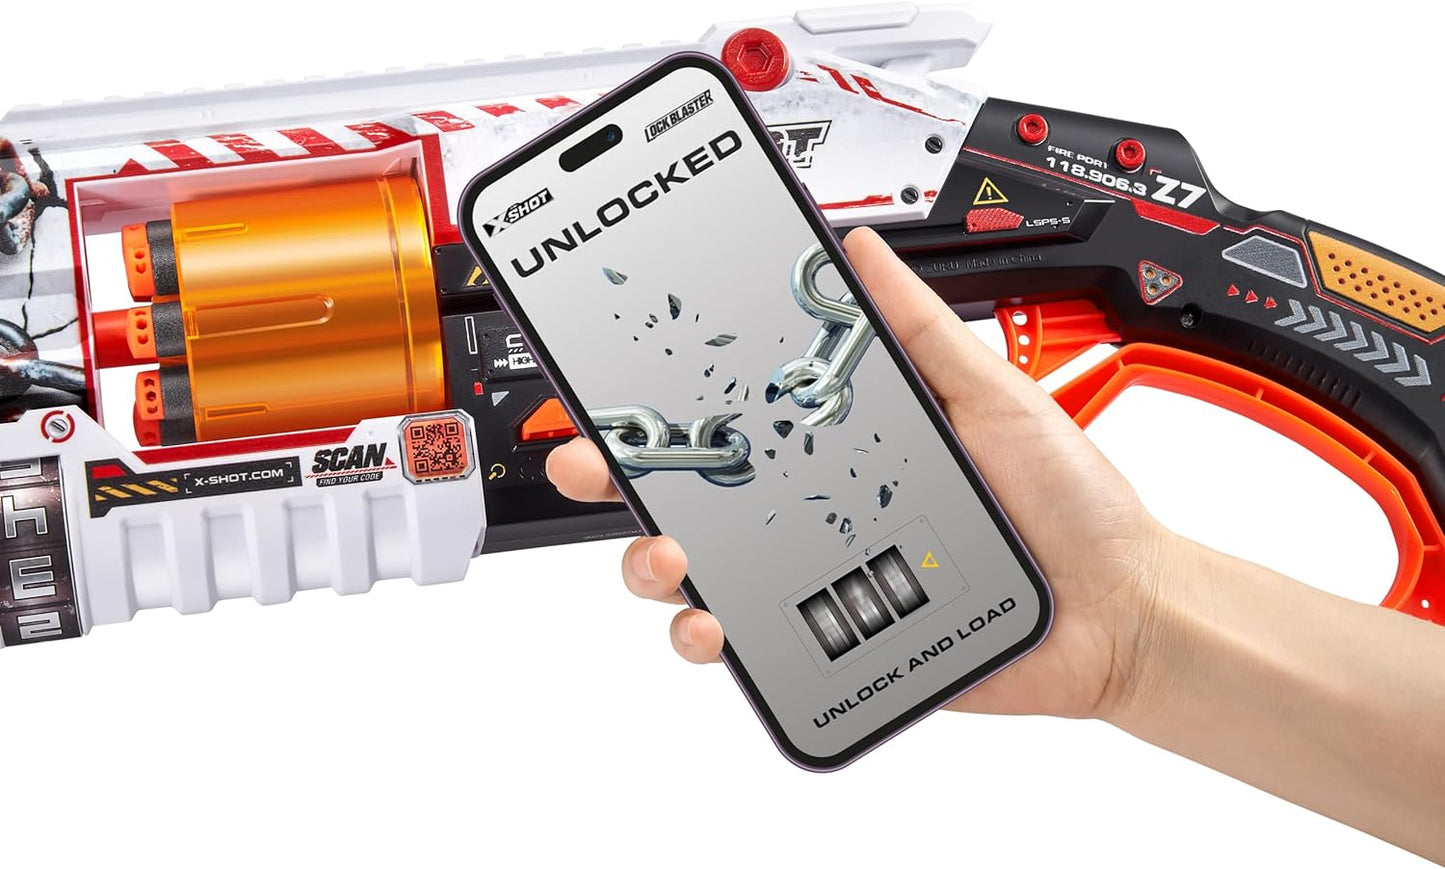 Zuru - X-Shot - Skins Lock Blaster mit Darts - Spielzeug Gun